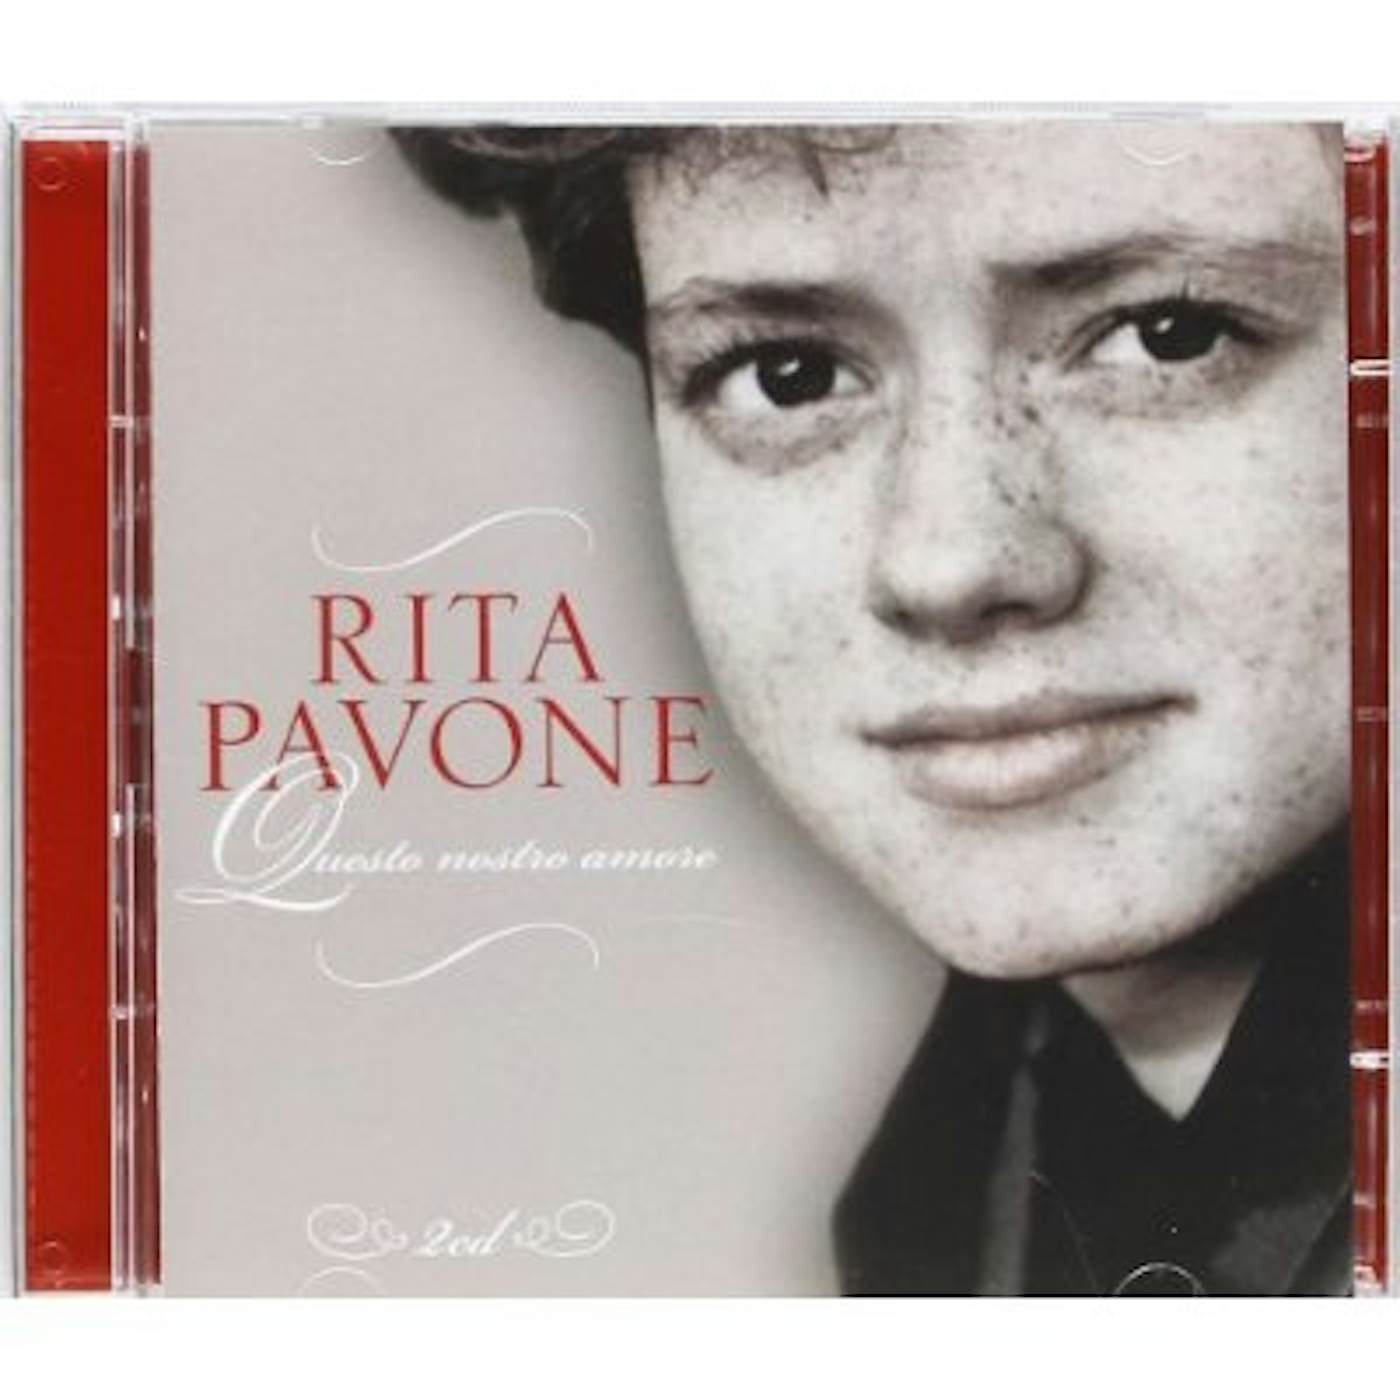 Rita Pavone QUESTO NOSTRO AMORE CD